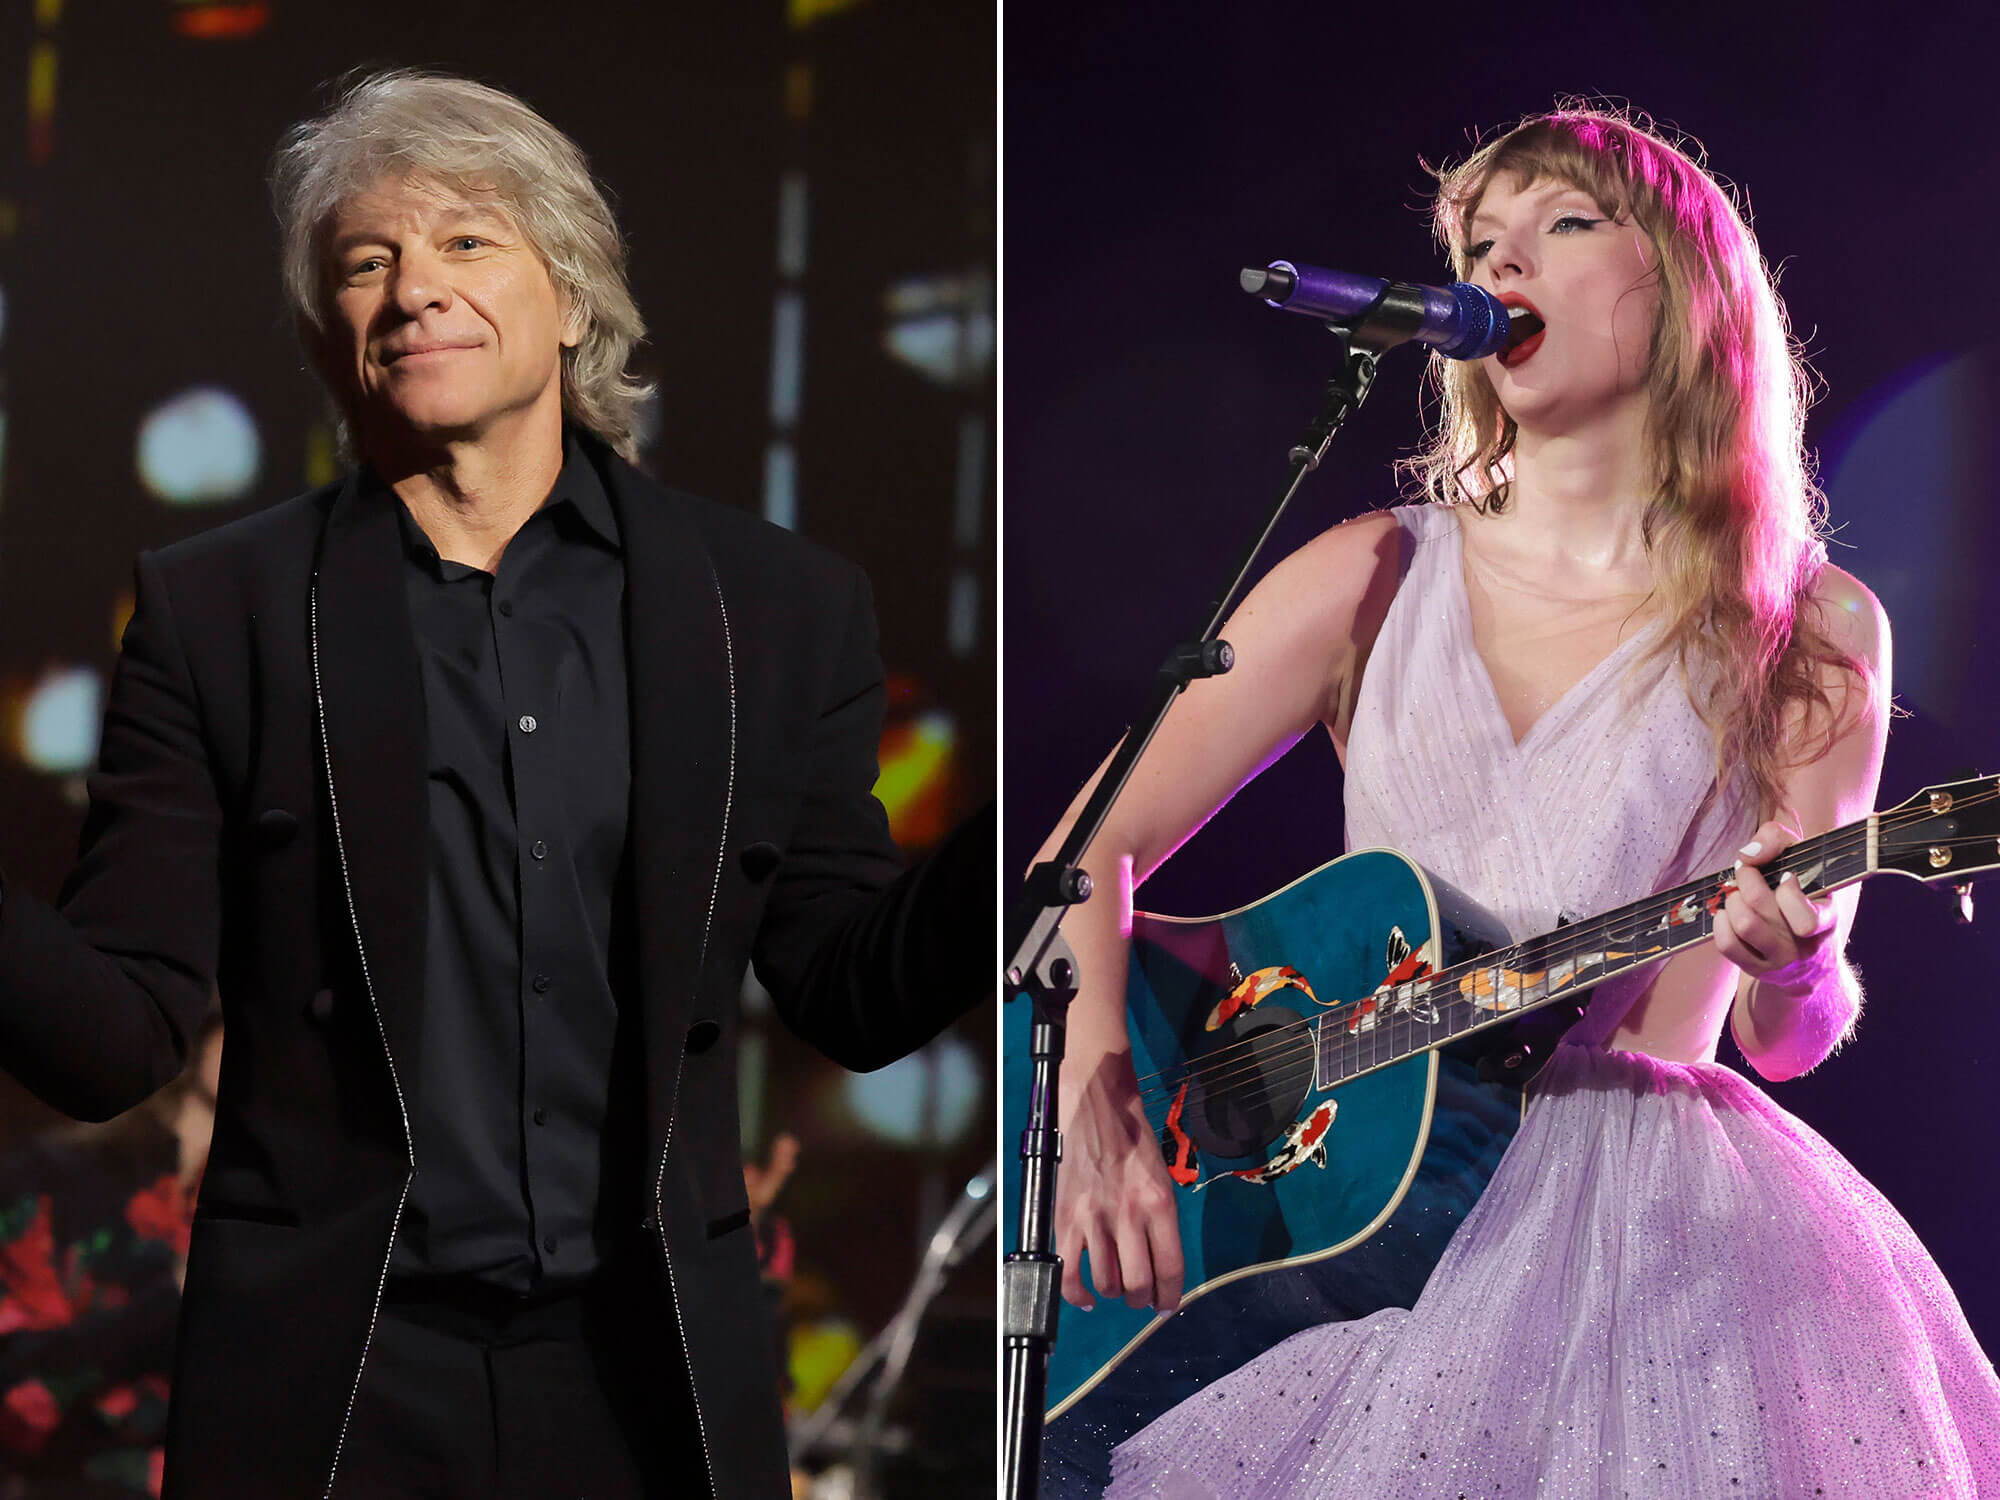 [L-R] Jon Bon Jovi and Taylor Swift